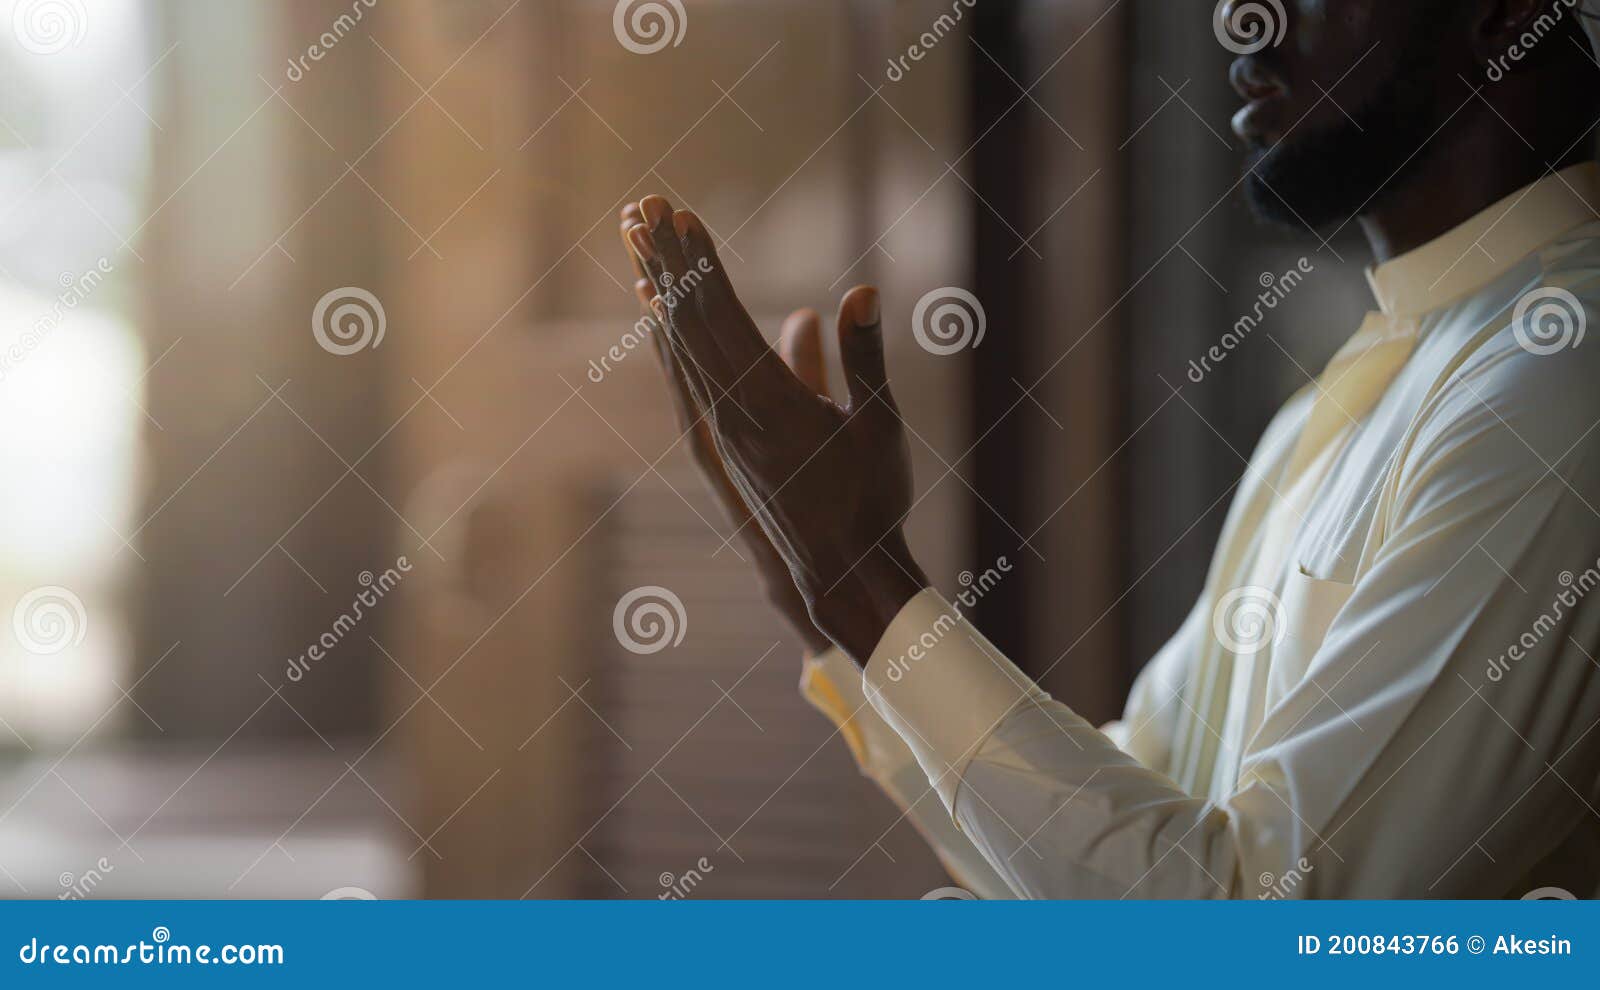 muslim man praying and worship dua ask allah for blessing during ramadan